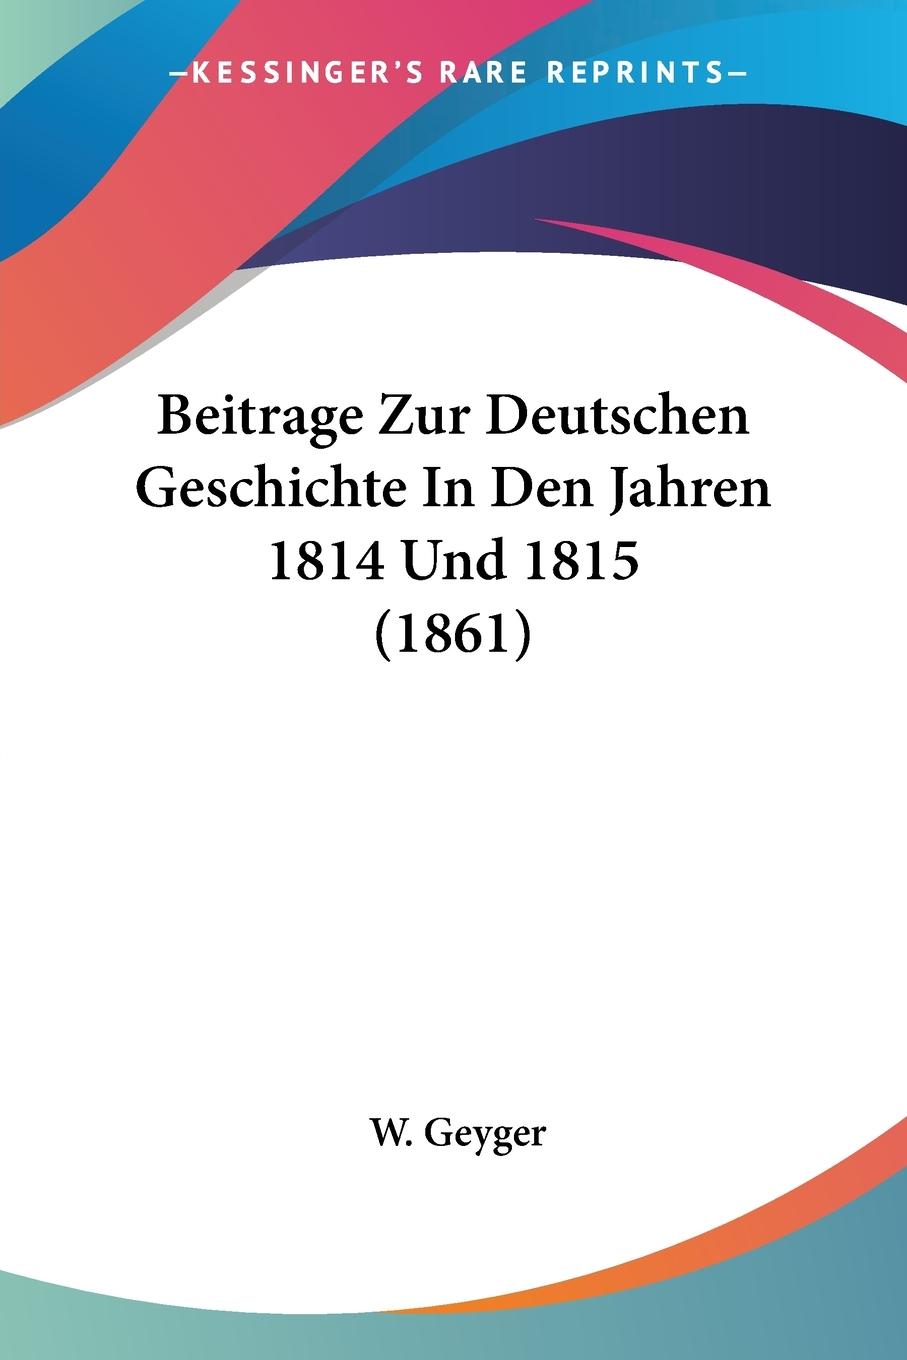 Beitrage Zur Deutschen Geschichte In Den Jahren 1814 Und 1815 (1861) - Geyger, W.